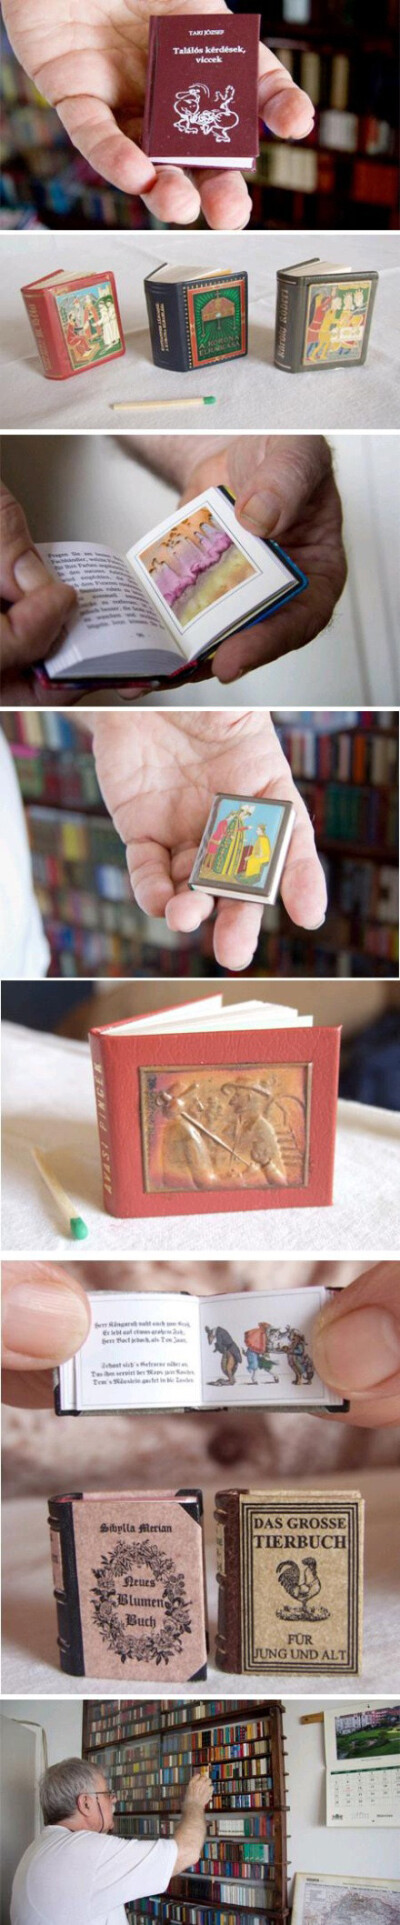 迷你书本~~【 Jozsef Tari 】专门收集迷你书，其中最老的书本有一百年历史咯！这些书都很精致！！